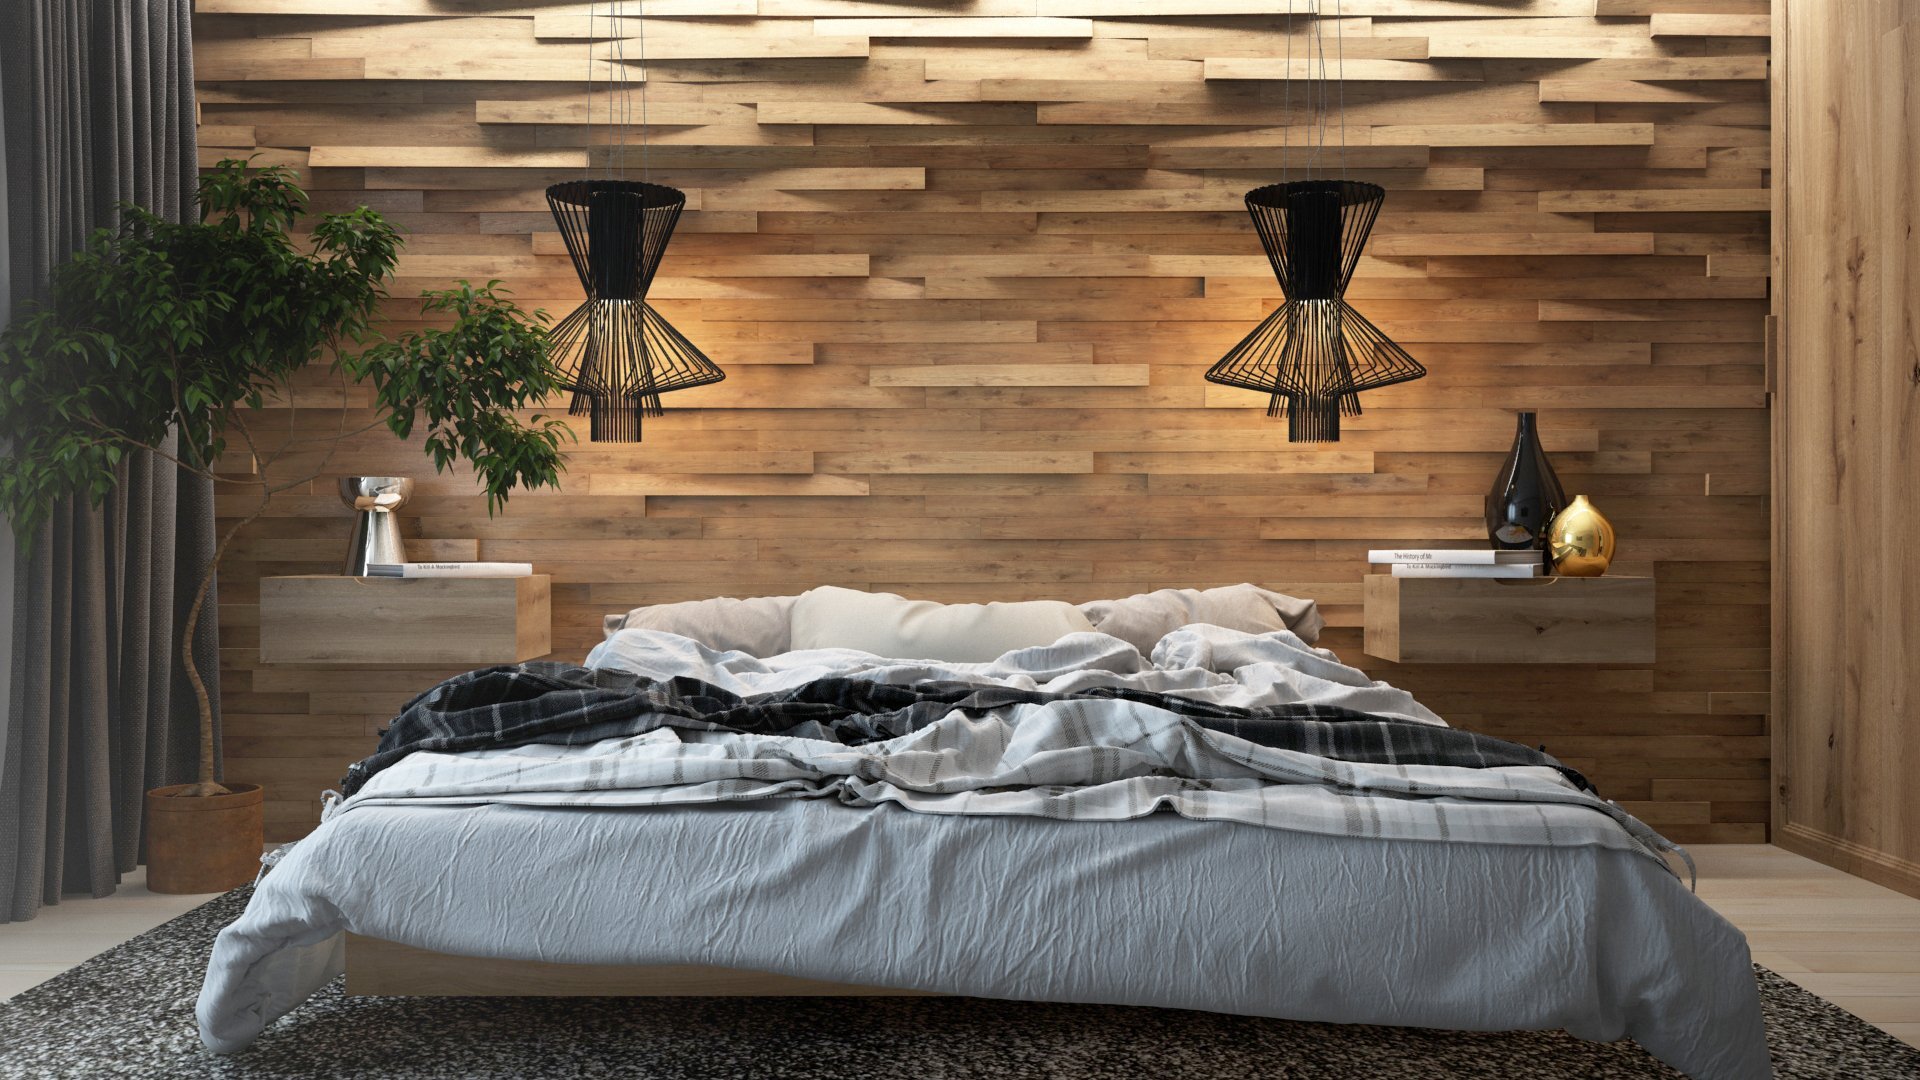 деревянная стена в спальне за кроватью